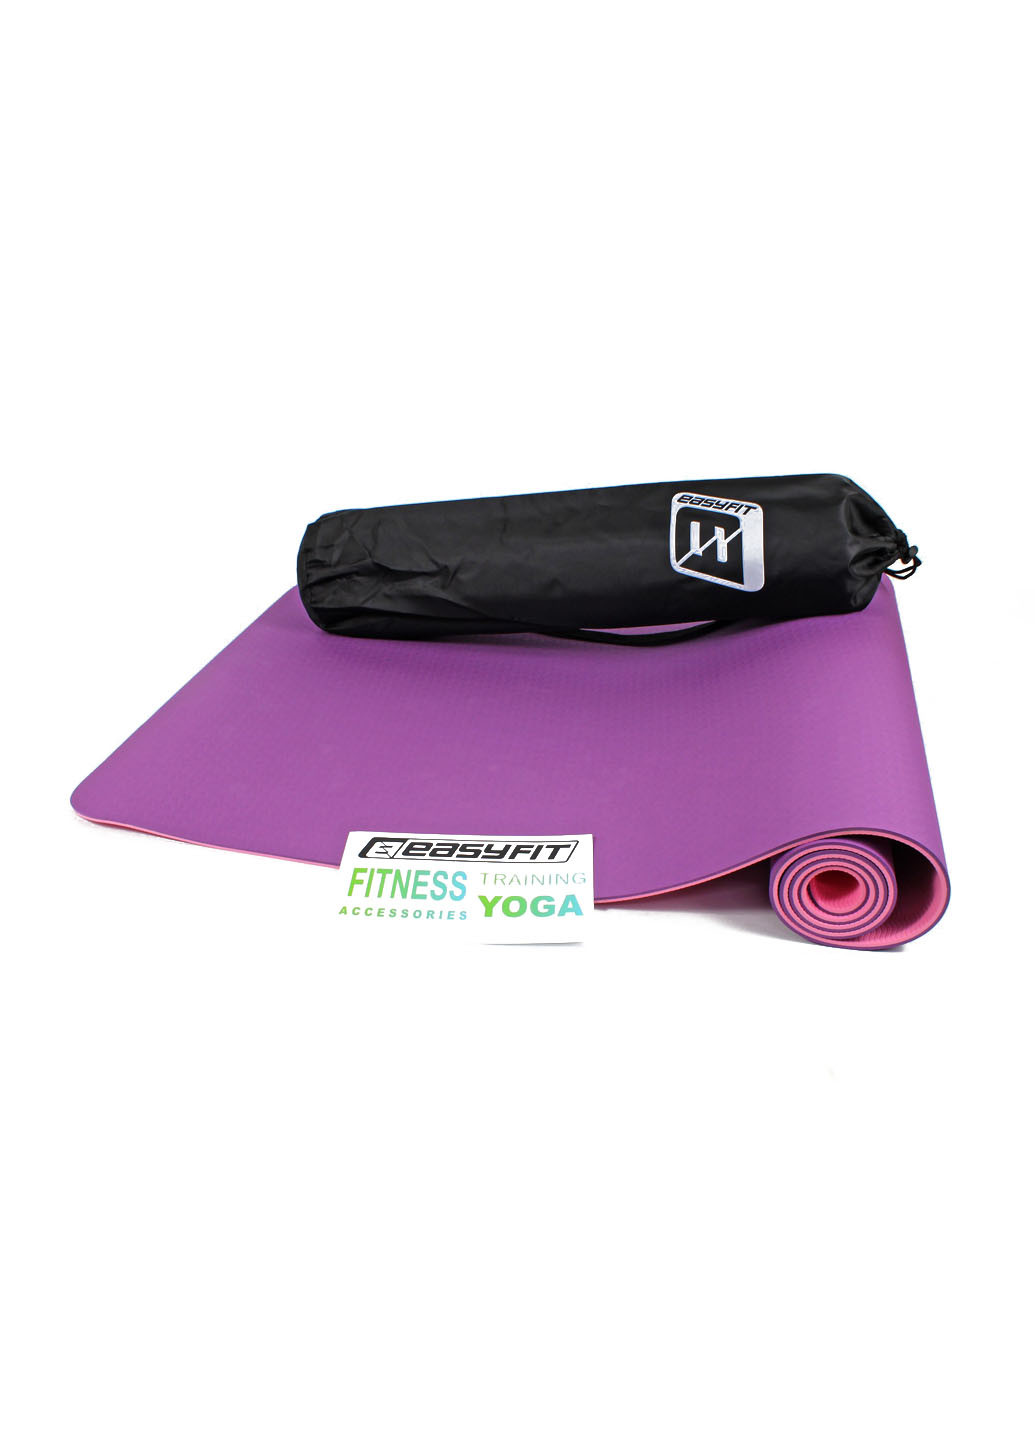 Коврик для йоги TPE+TC ECO-Friendly 6 мм фиолетовый с розовым (мат-каремат спортивный, йогамат для фитнеса, пилатеса) EasyFit (237596255)